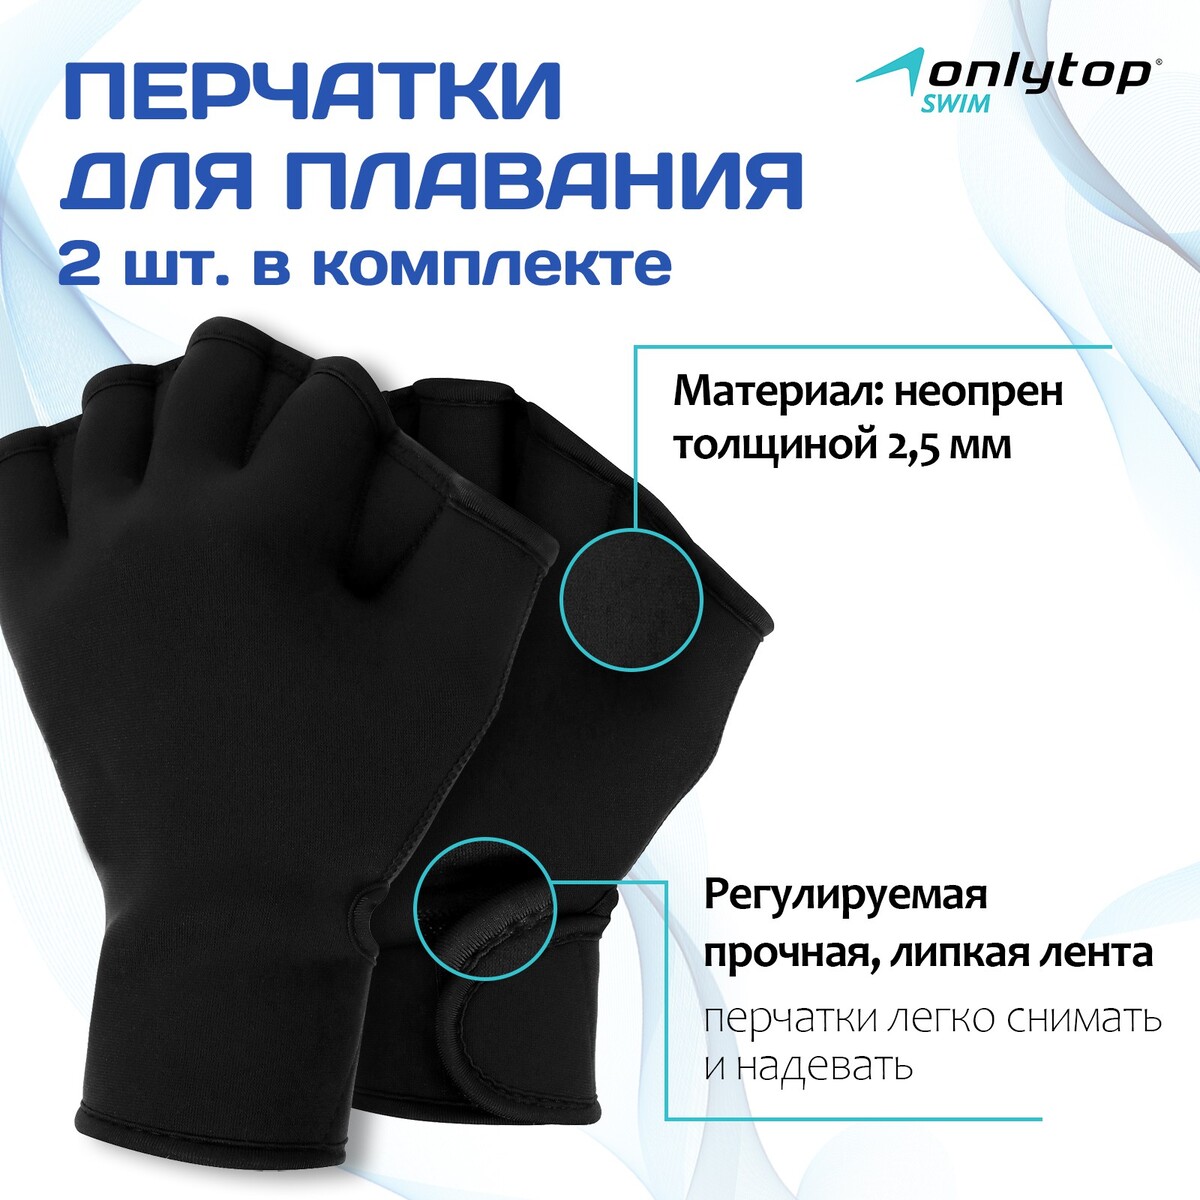 Перчатки для плавания onlytop, неопрен, 2.5 мм, р. l, цвет черный